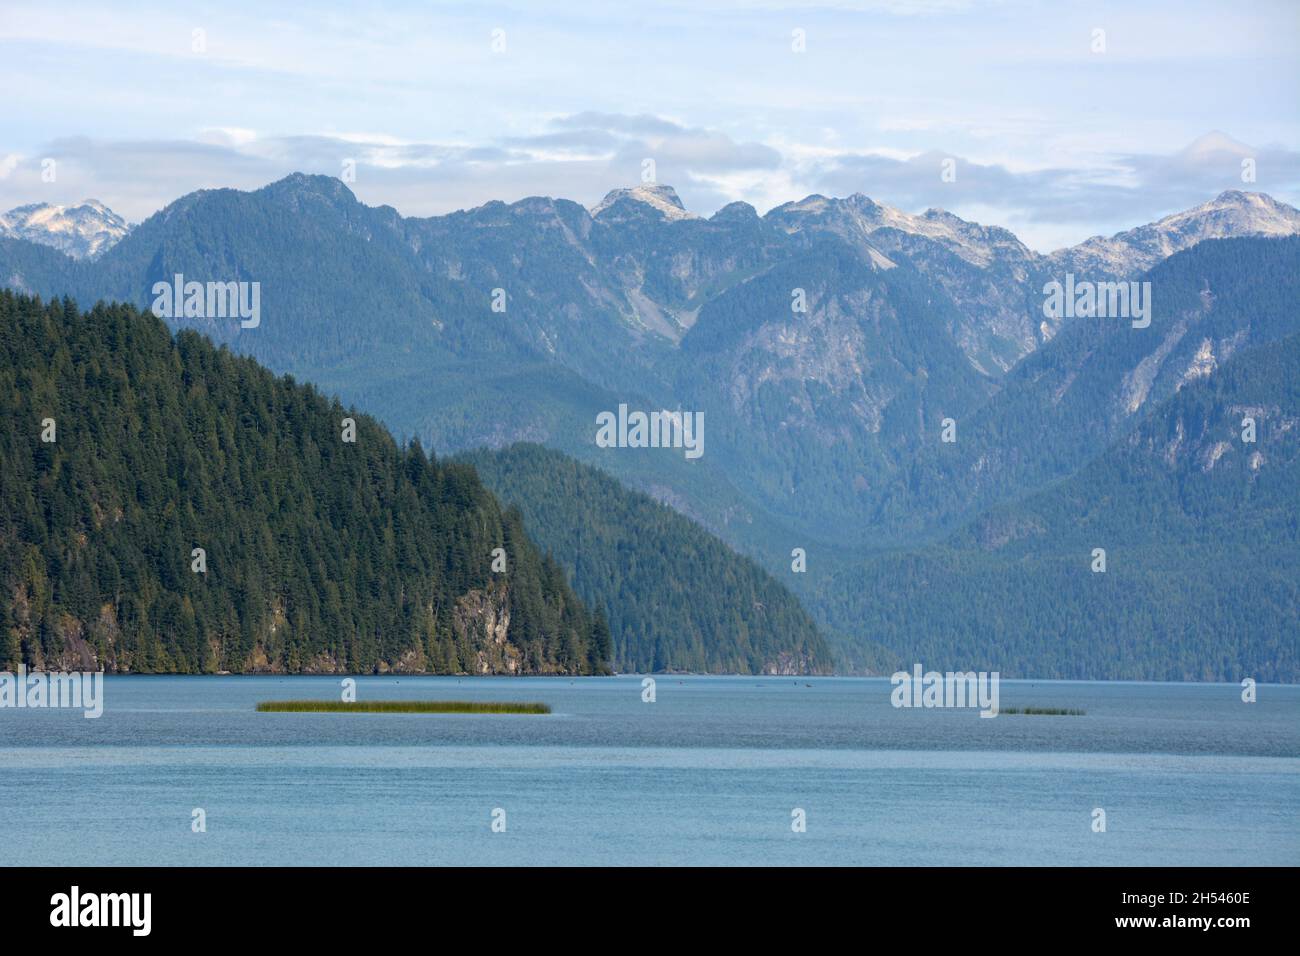 Pitt Lake, einer der größten Gezeitenseen der Welt, und die Berge der Garibaldi Range, in der Nähe von Pitt Meadows, British Columbia, Kanada. Stockfoto